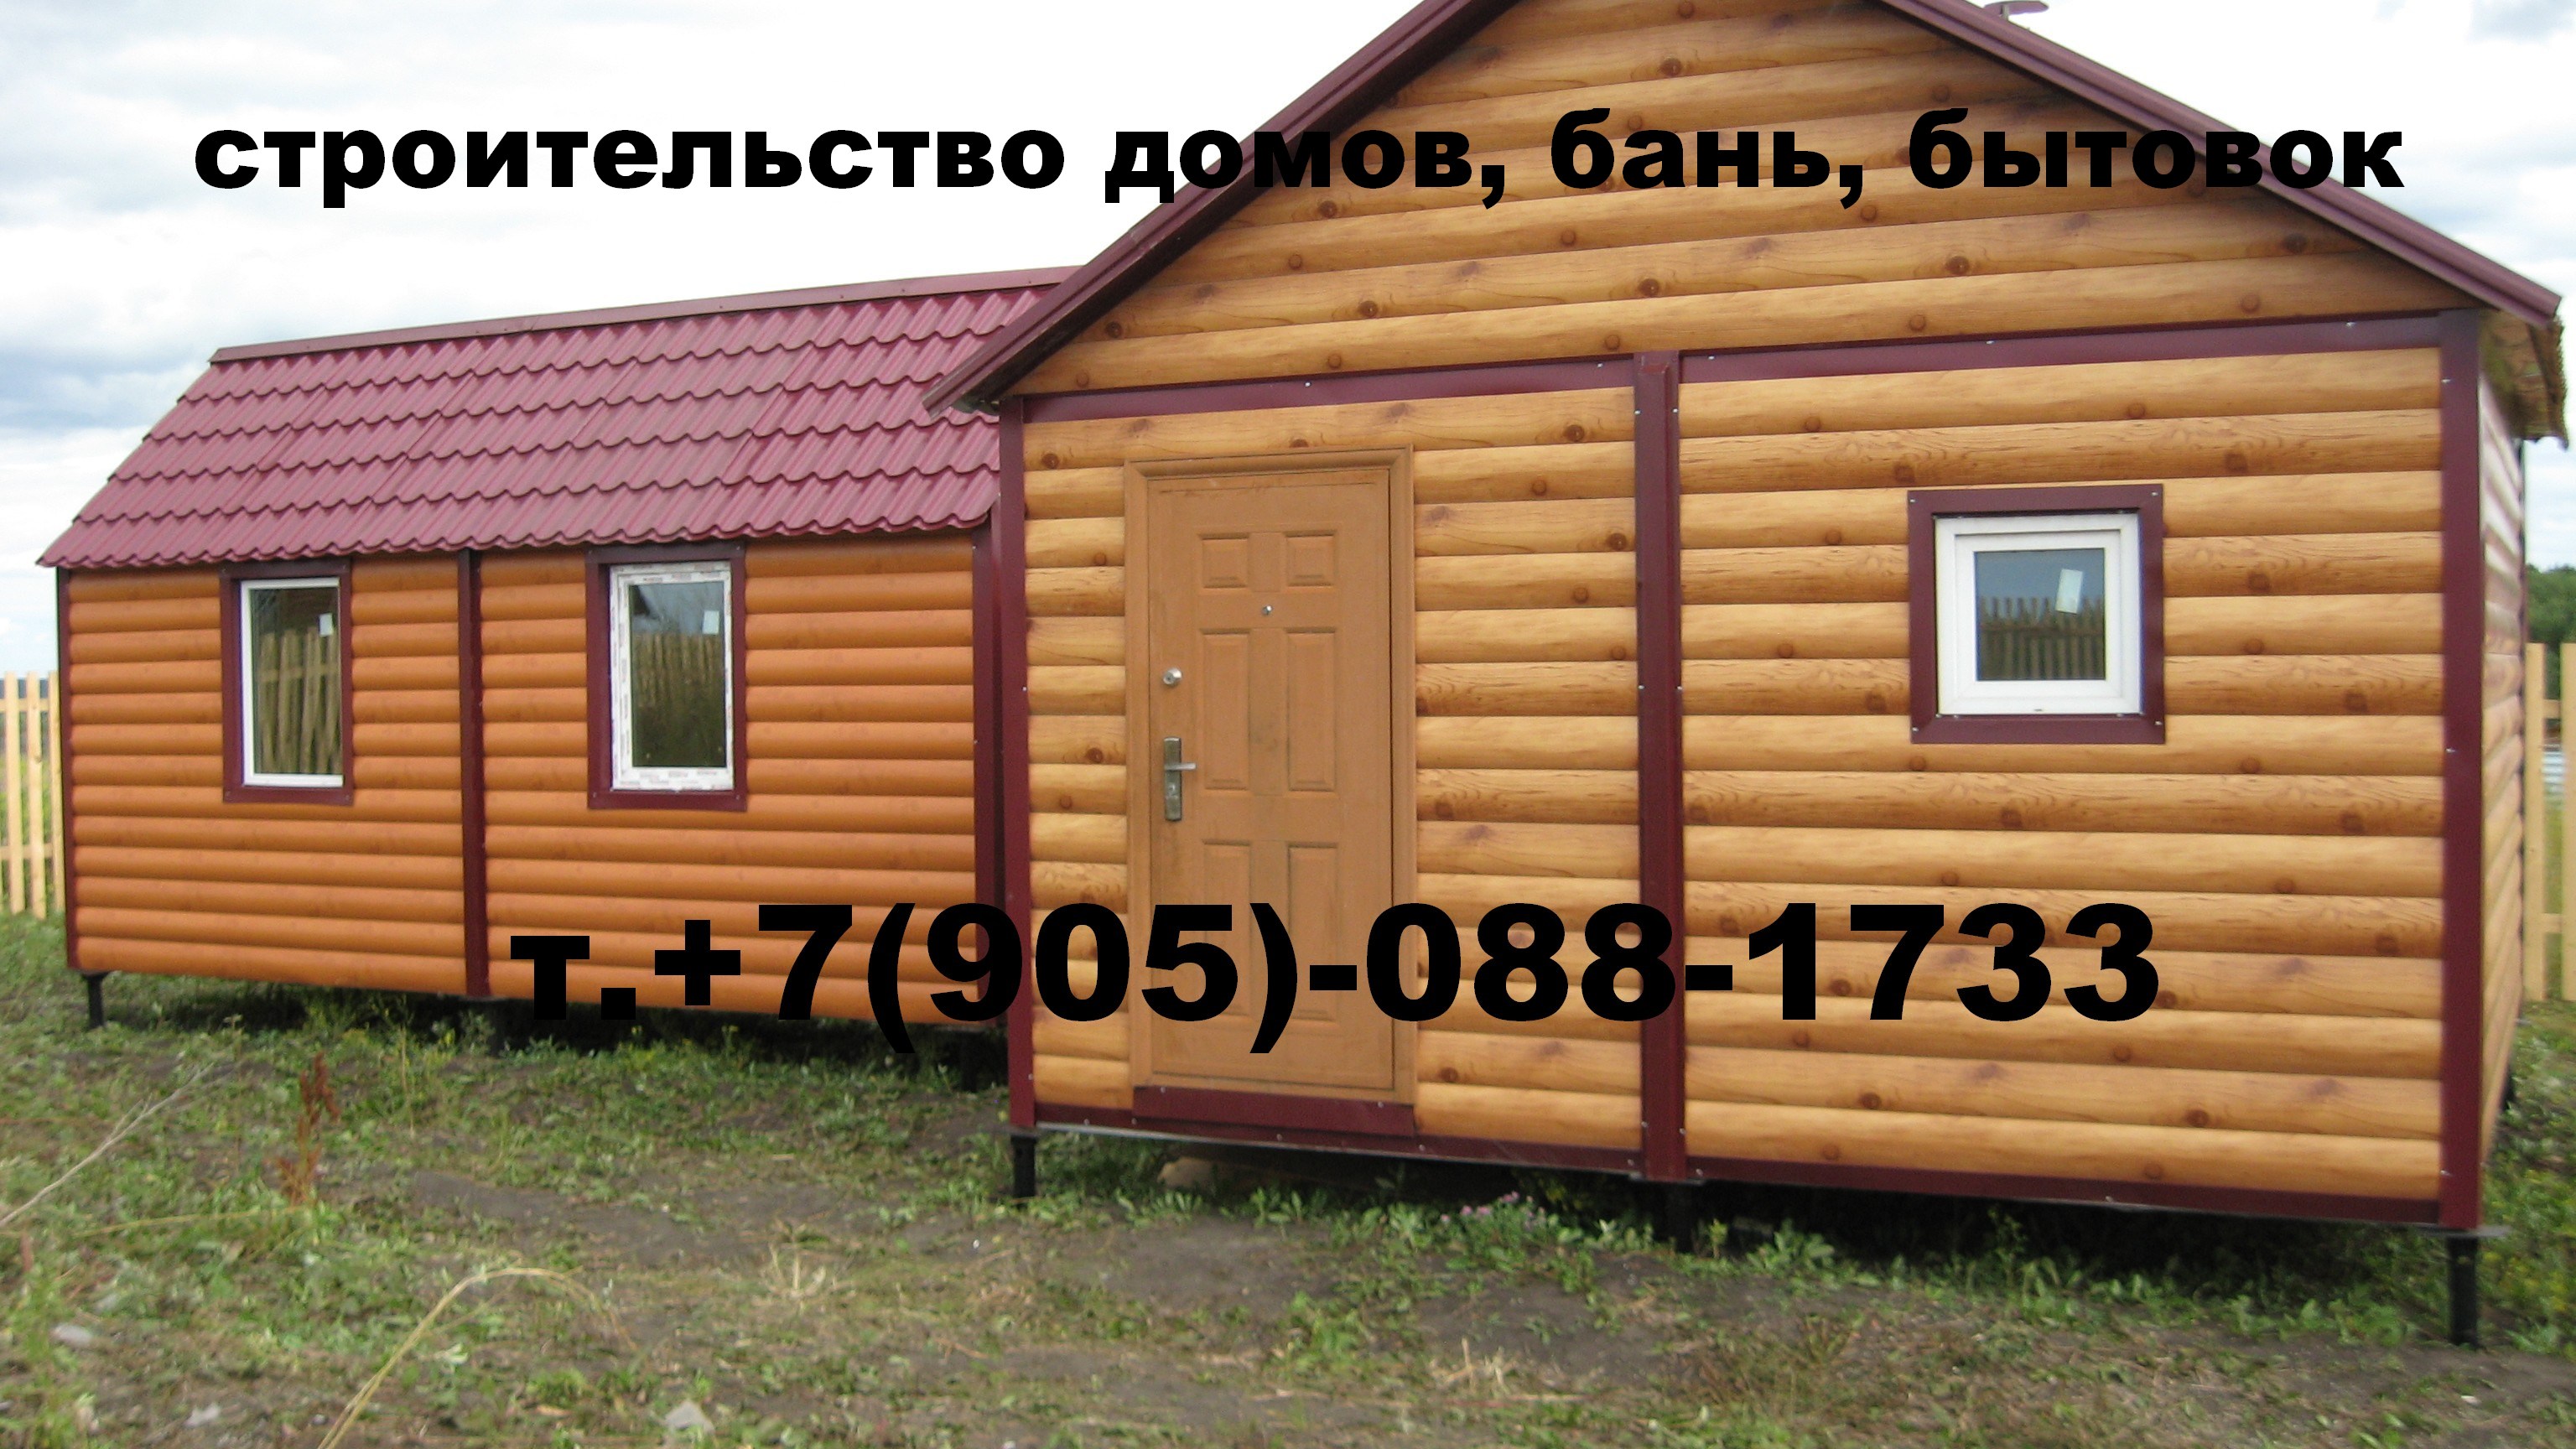 двух модульный дом для сада, дачи, отдыха в городе Красноярск, фото 5, телефон продавца: +7 (905) 088-17-33